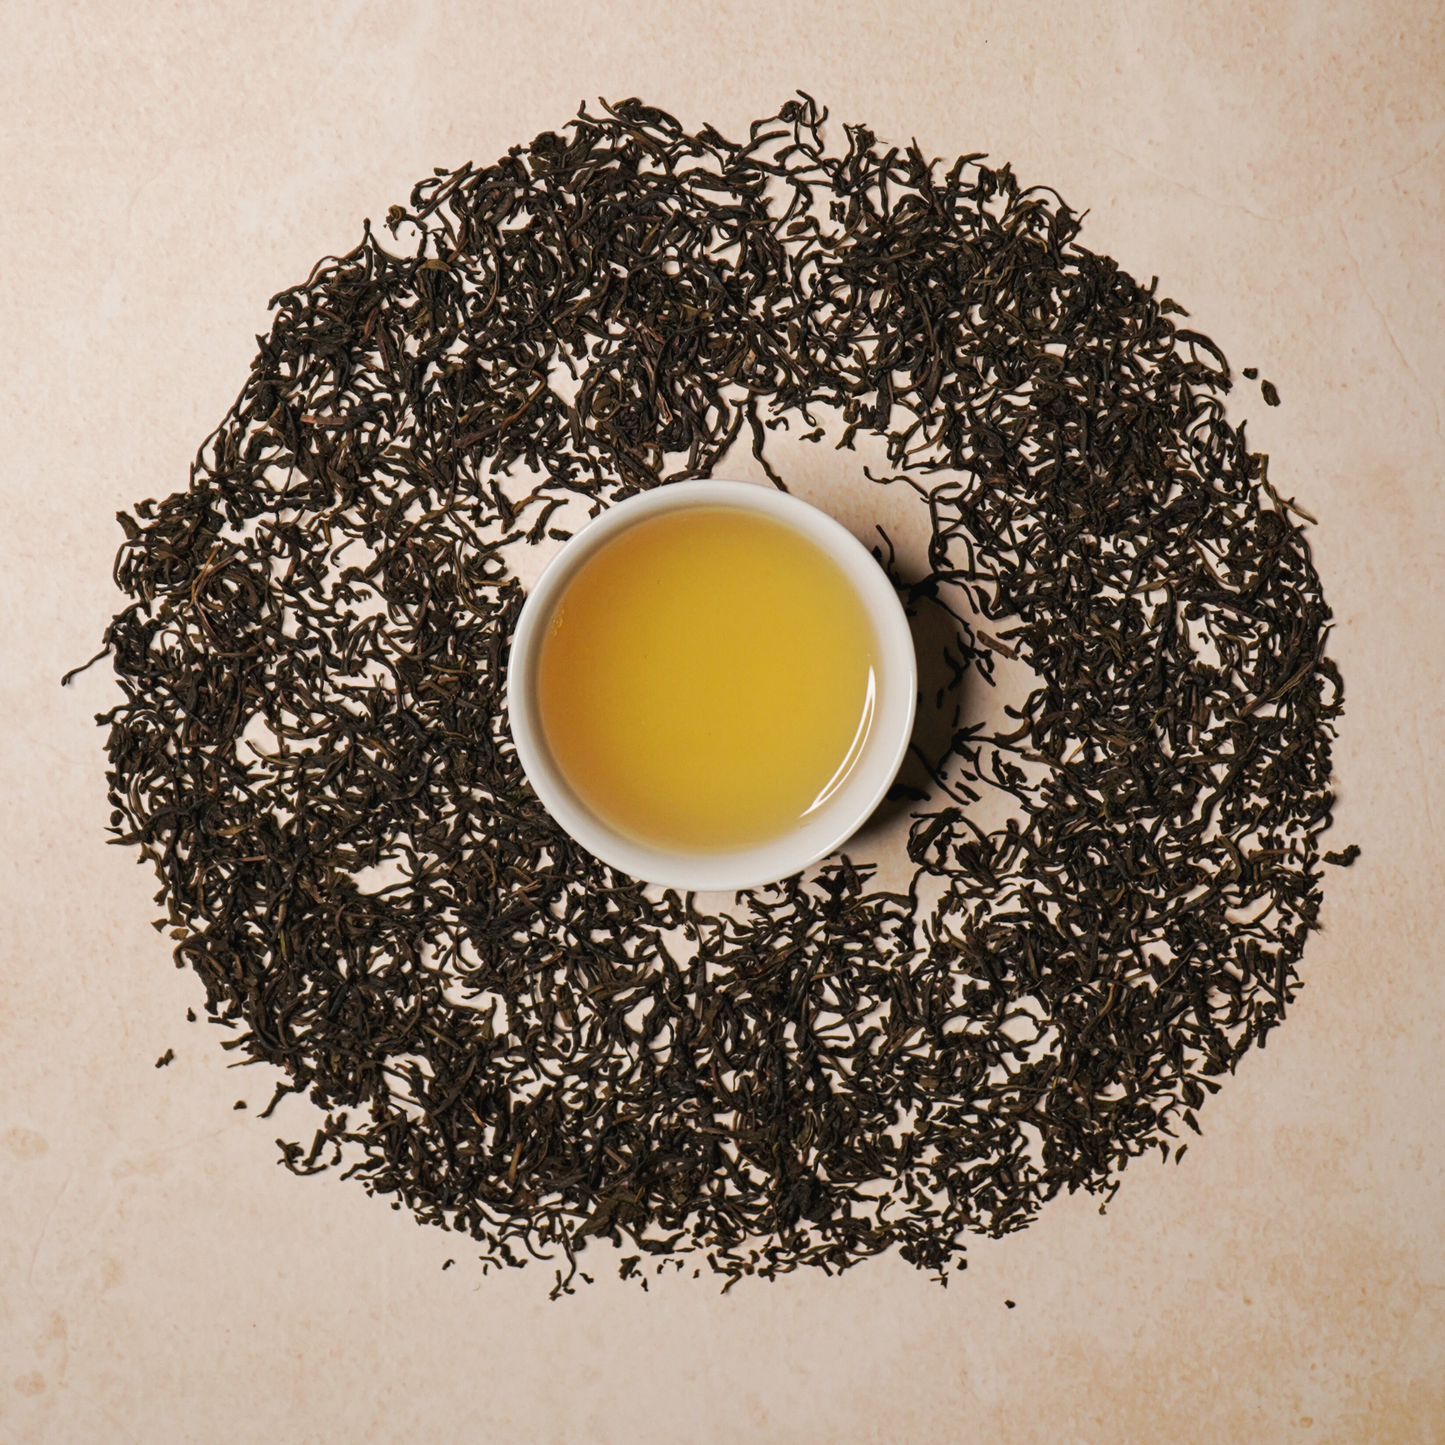 Buy Loose Leaf Tea, Nilgiri Tea Online : Chai Experience